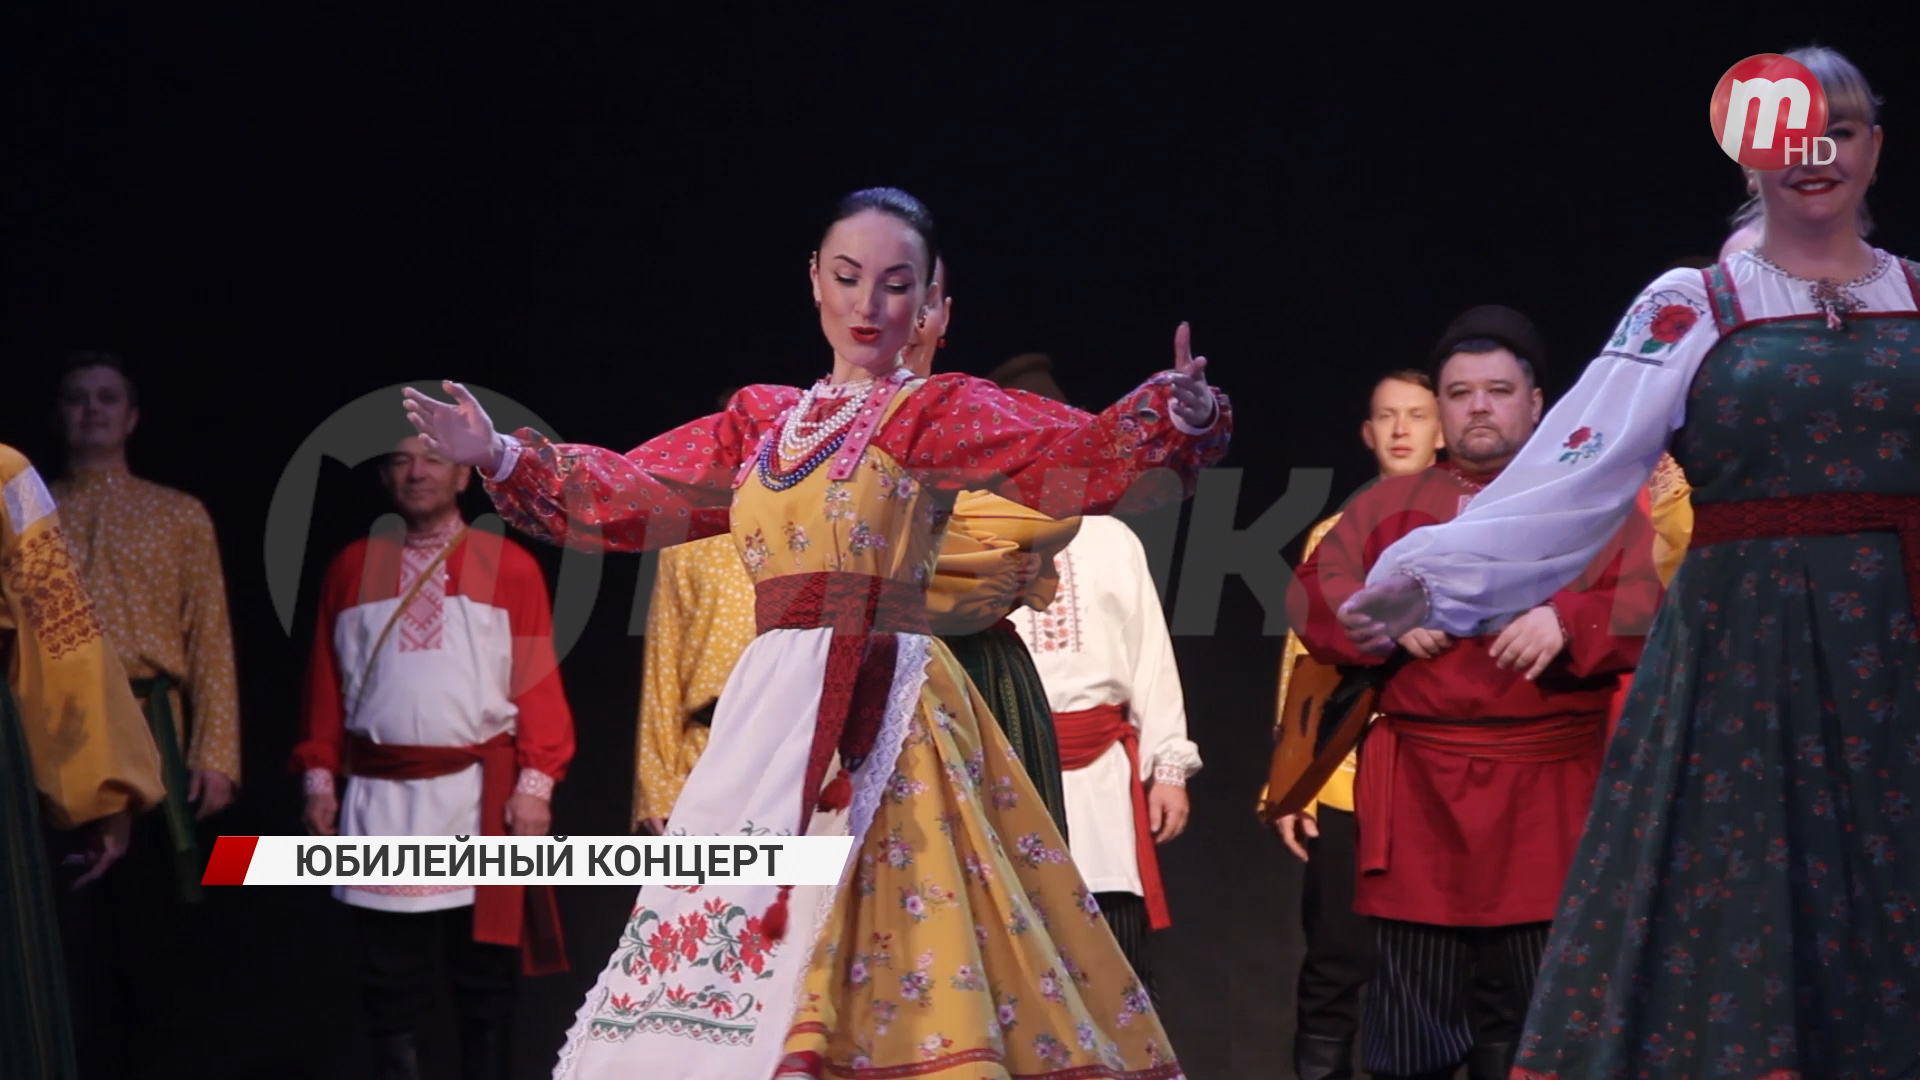 Театр народной музыки и танца "Забава" отмечает юбилей - 30 летие!